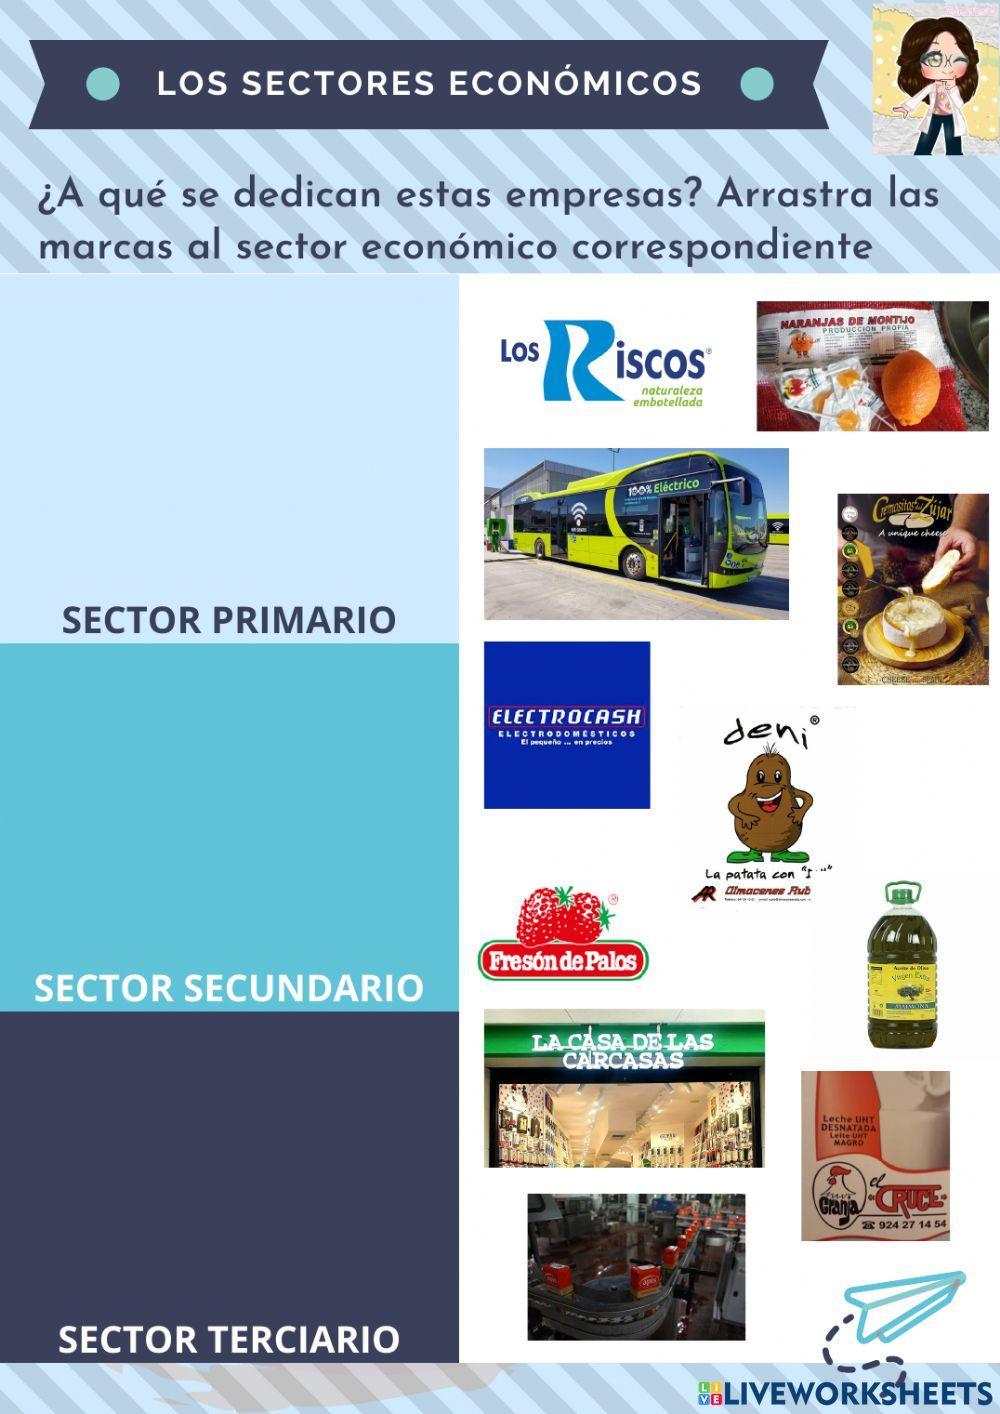 Los sectores económicos